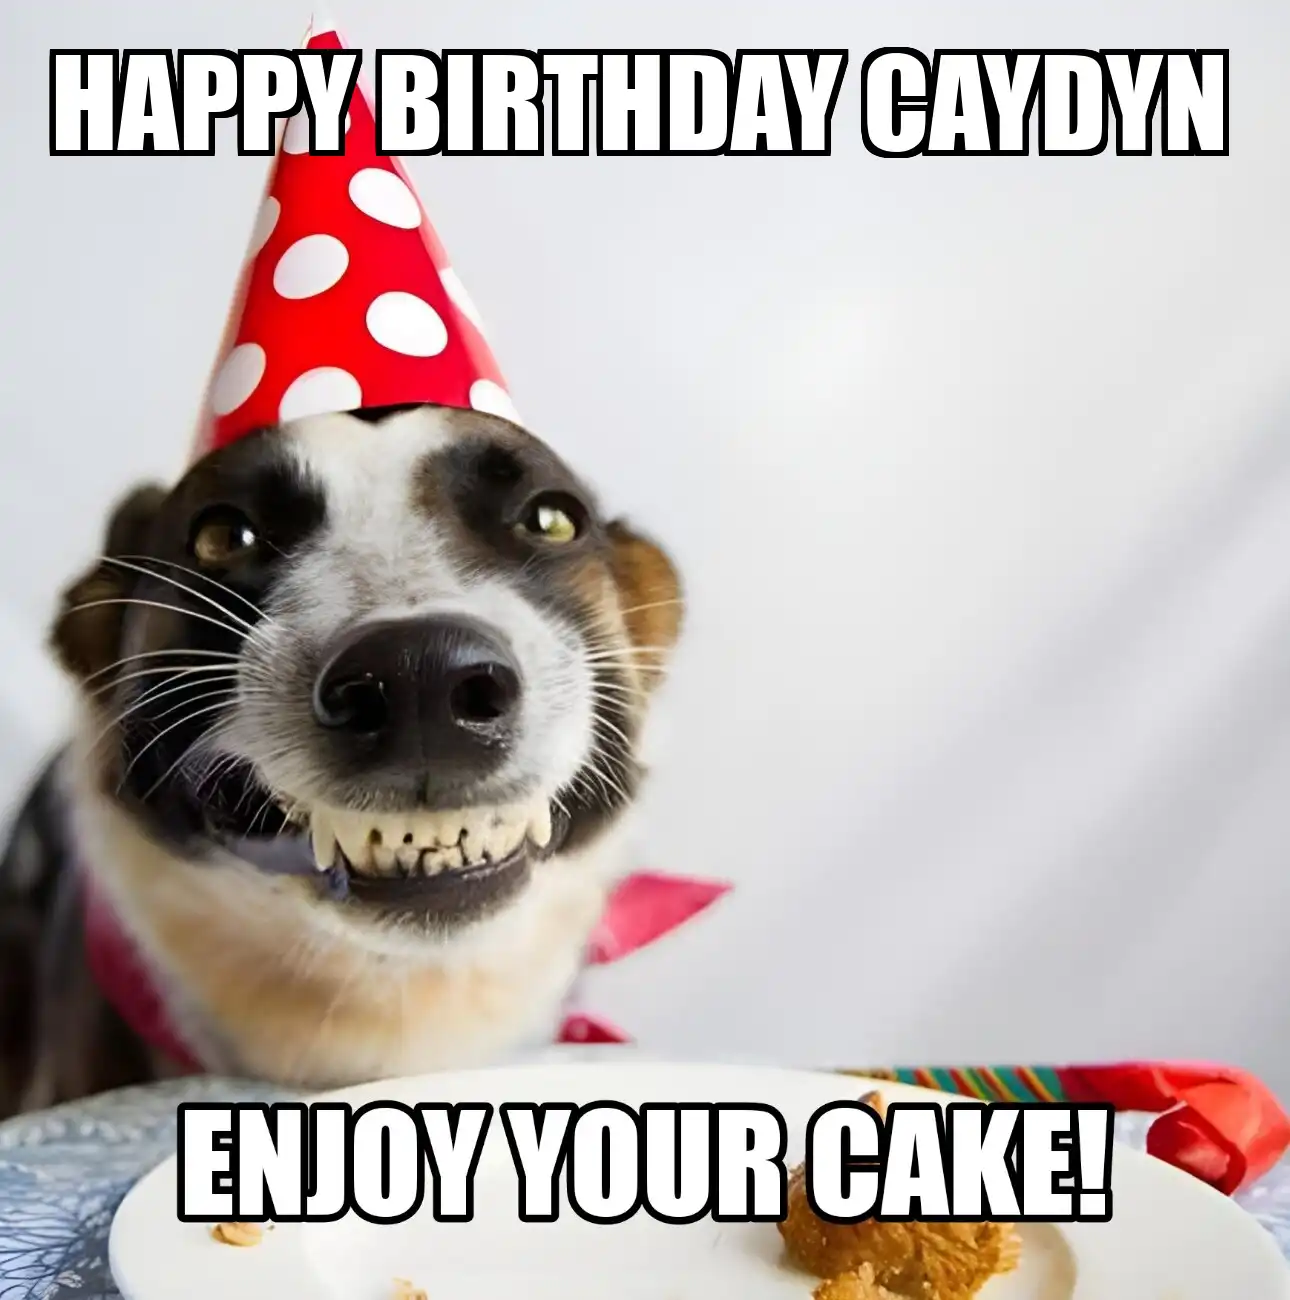 Happy Birthday Caydyn Enjoy Your Cake Dog Meme